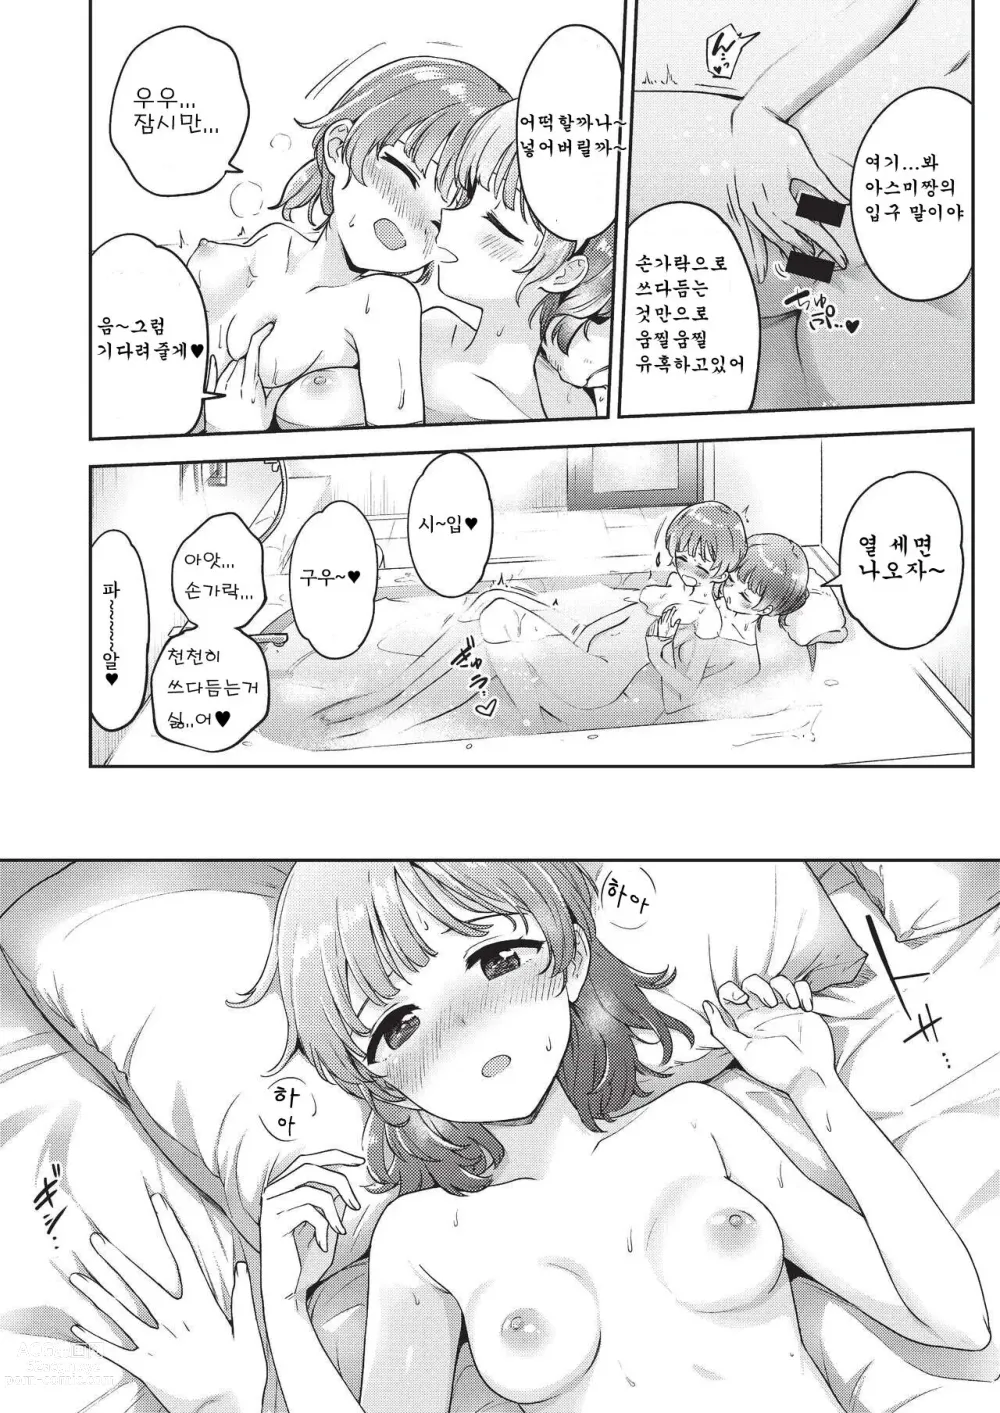 Page 6 of doujinshi 아스미짱은 레즈 풍속에 흥미가 있습니다!